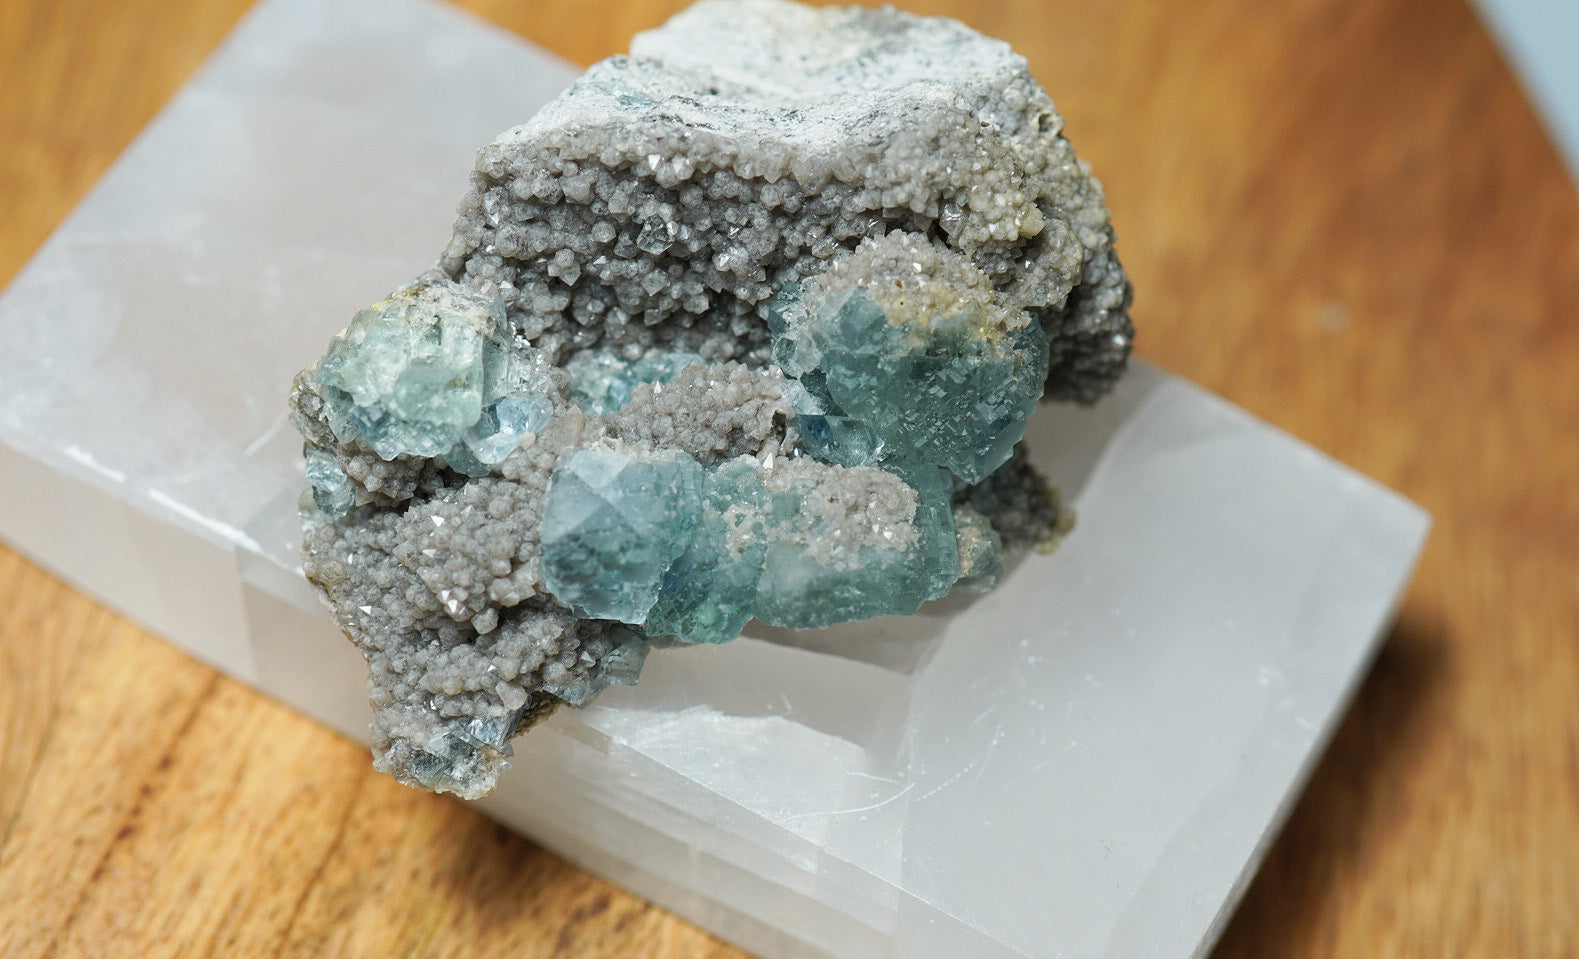 Light Blue Fluorite & Smoky Quartz - crystalsbysabeads.com